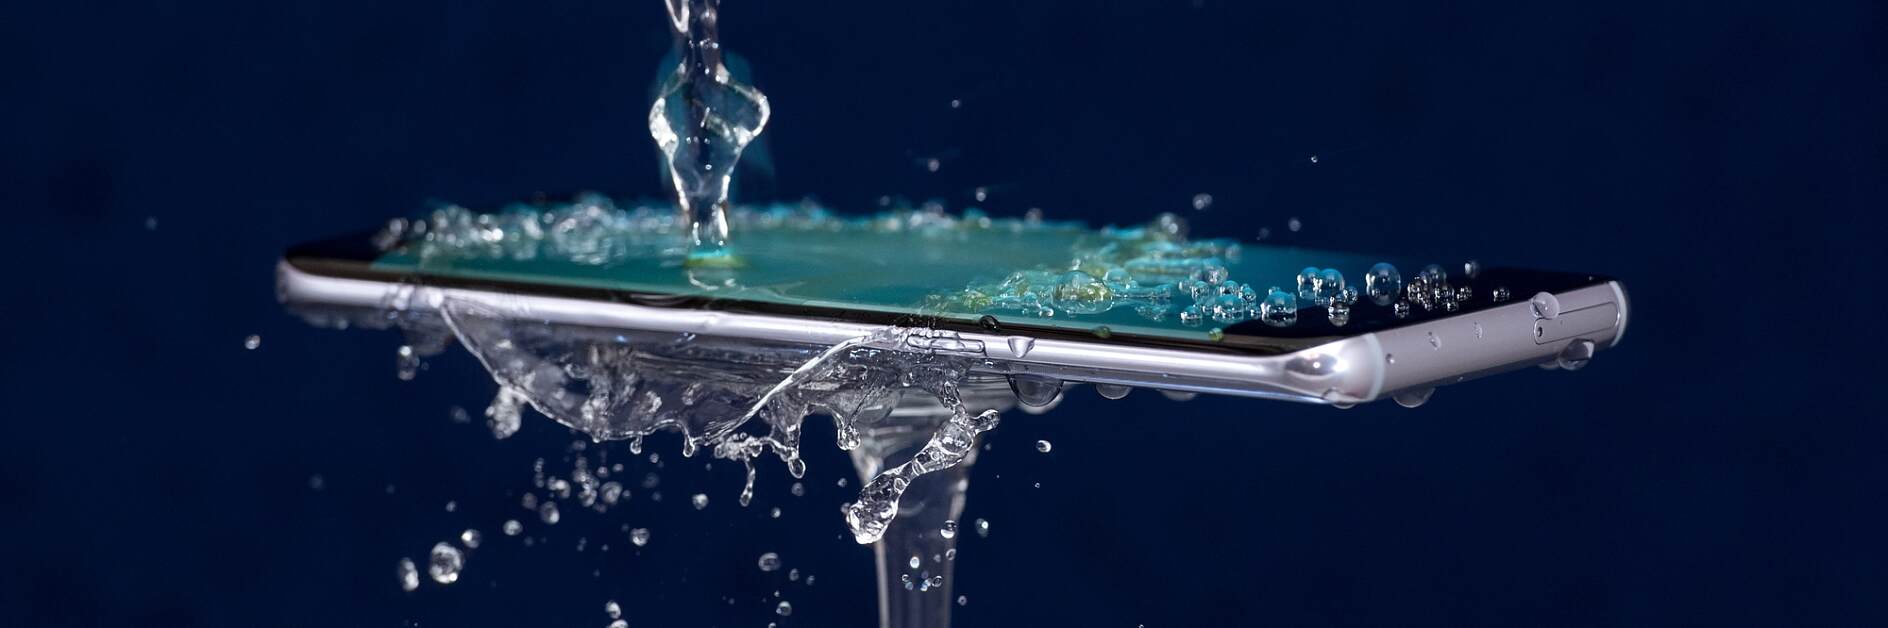 tesa-smartphone-under-water